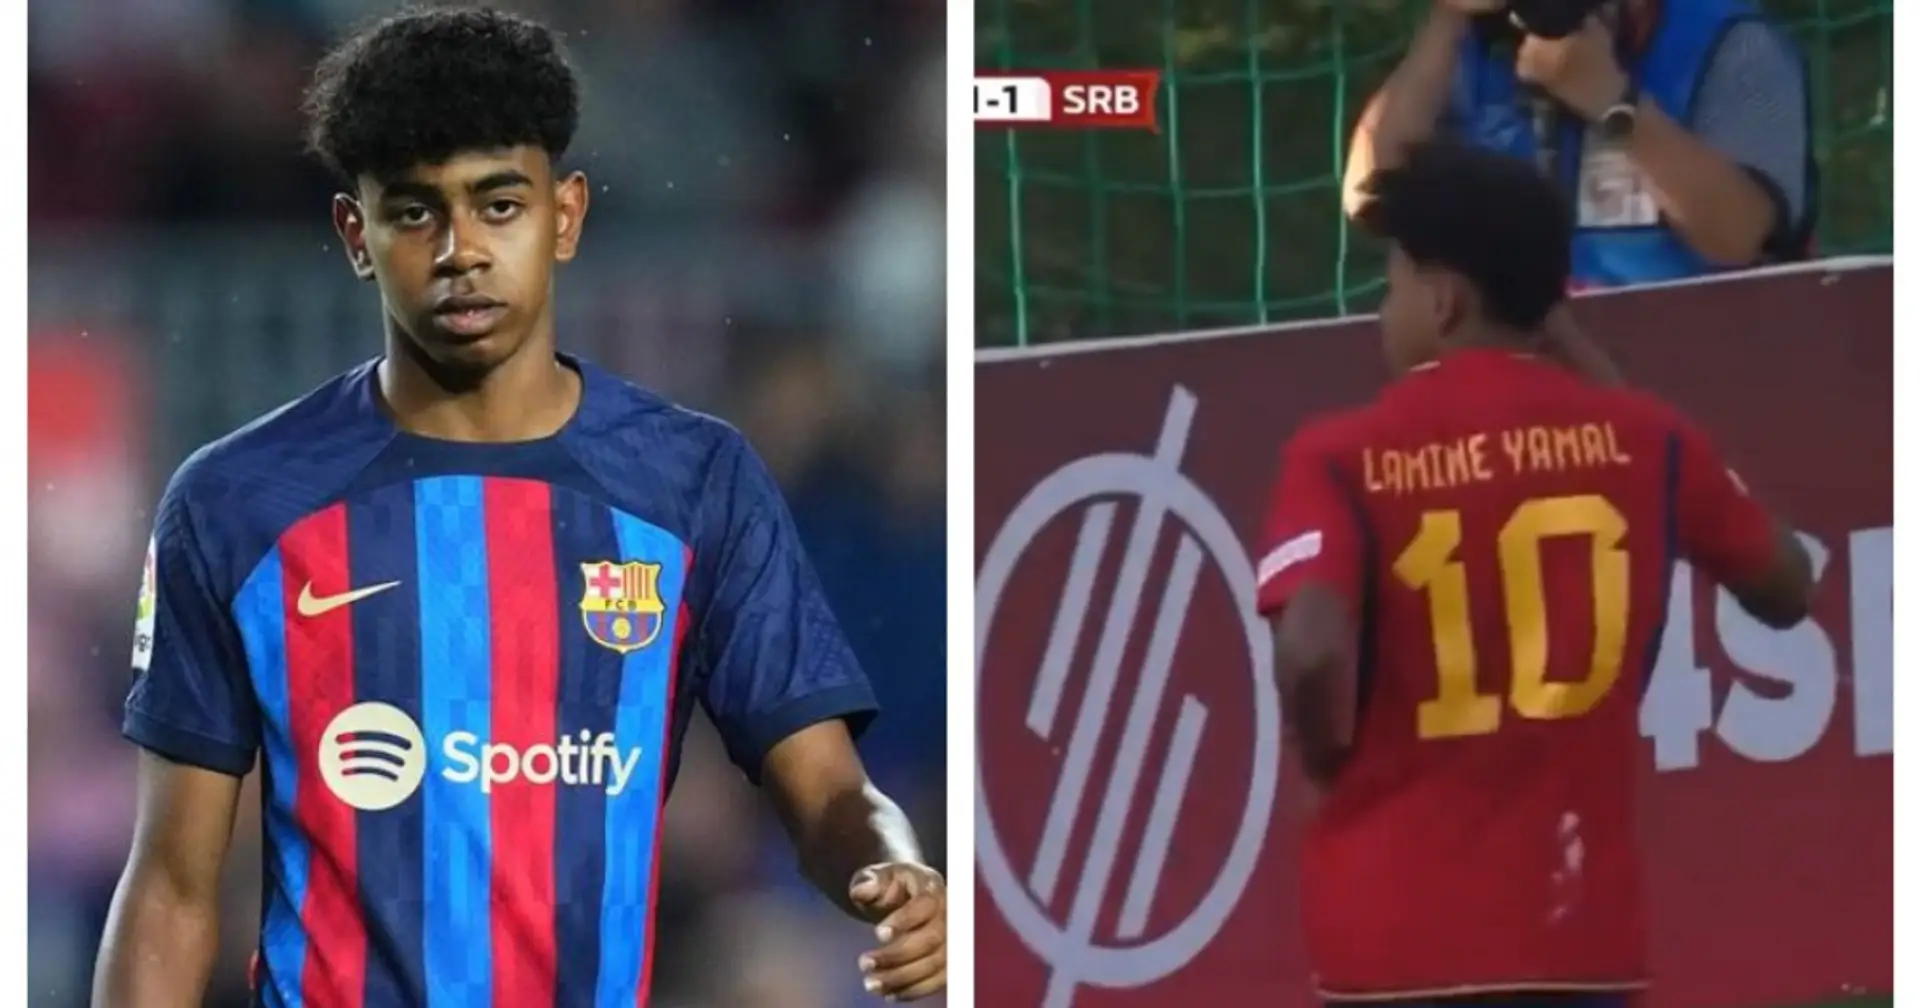 Das 15-jährige Wunderkind Lamine Yamal hat bei der EM ein wunderschönes Tor geschossen: Barca hat kürzlich einen Vertrag mit ihm unterschrieben🔥🔥🔥